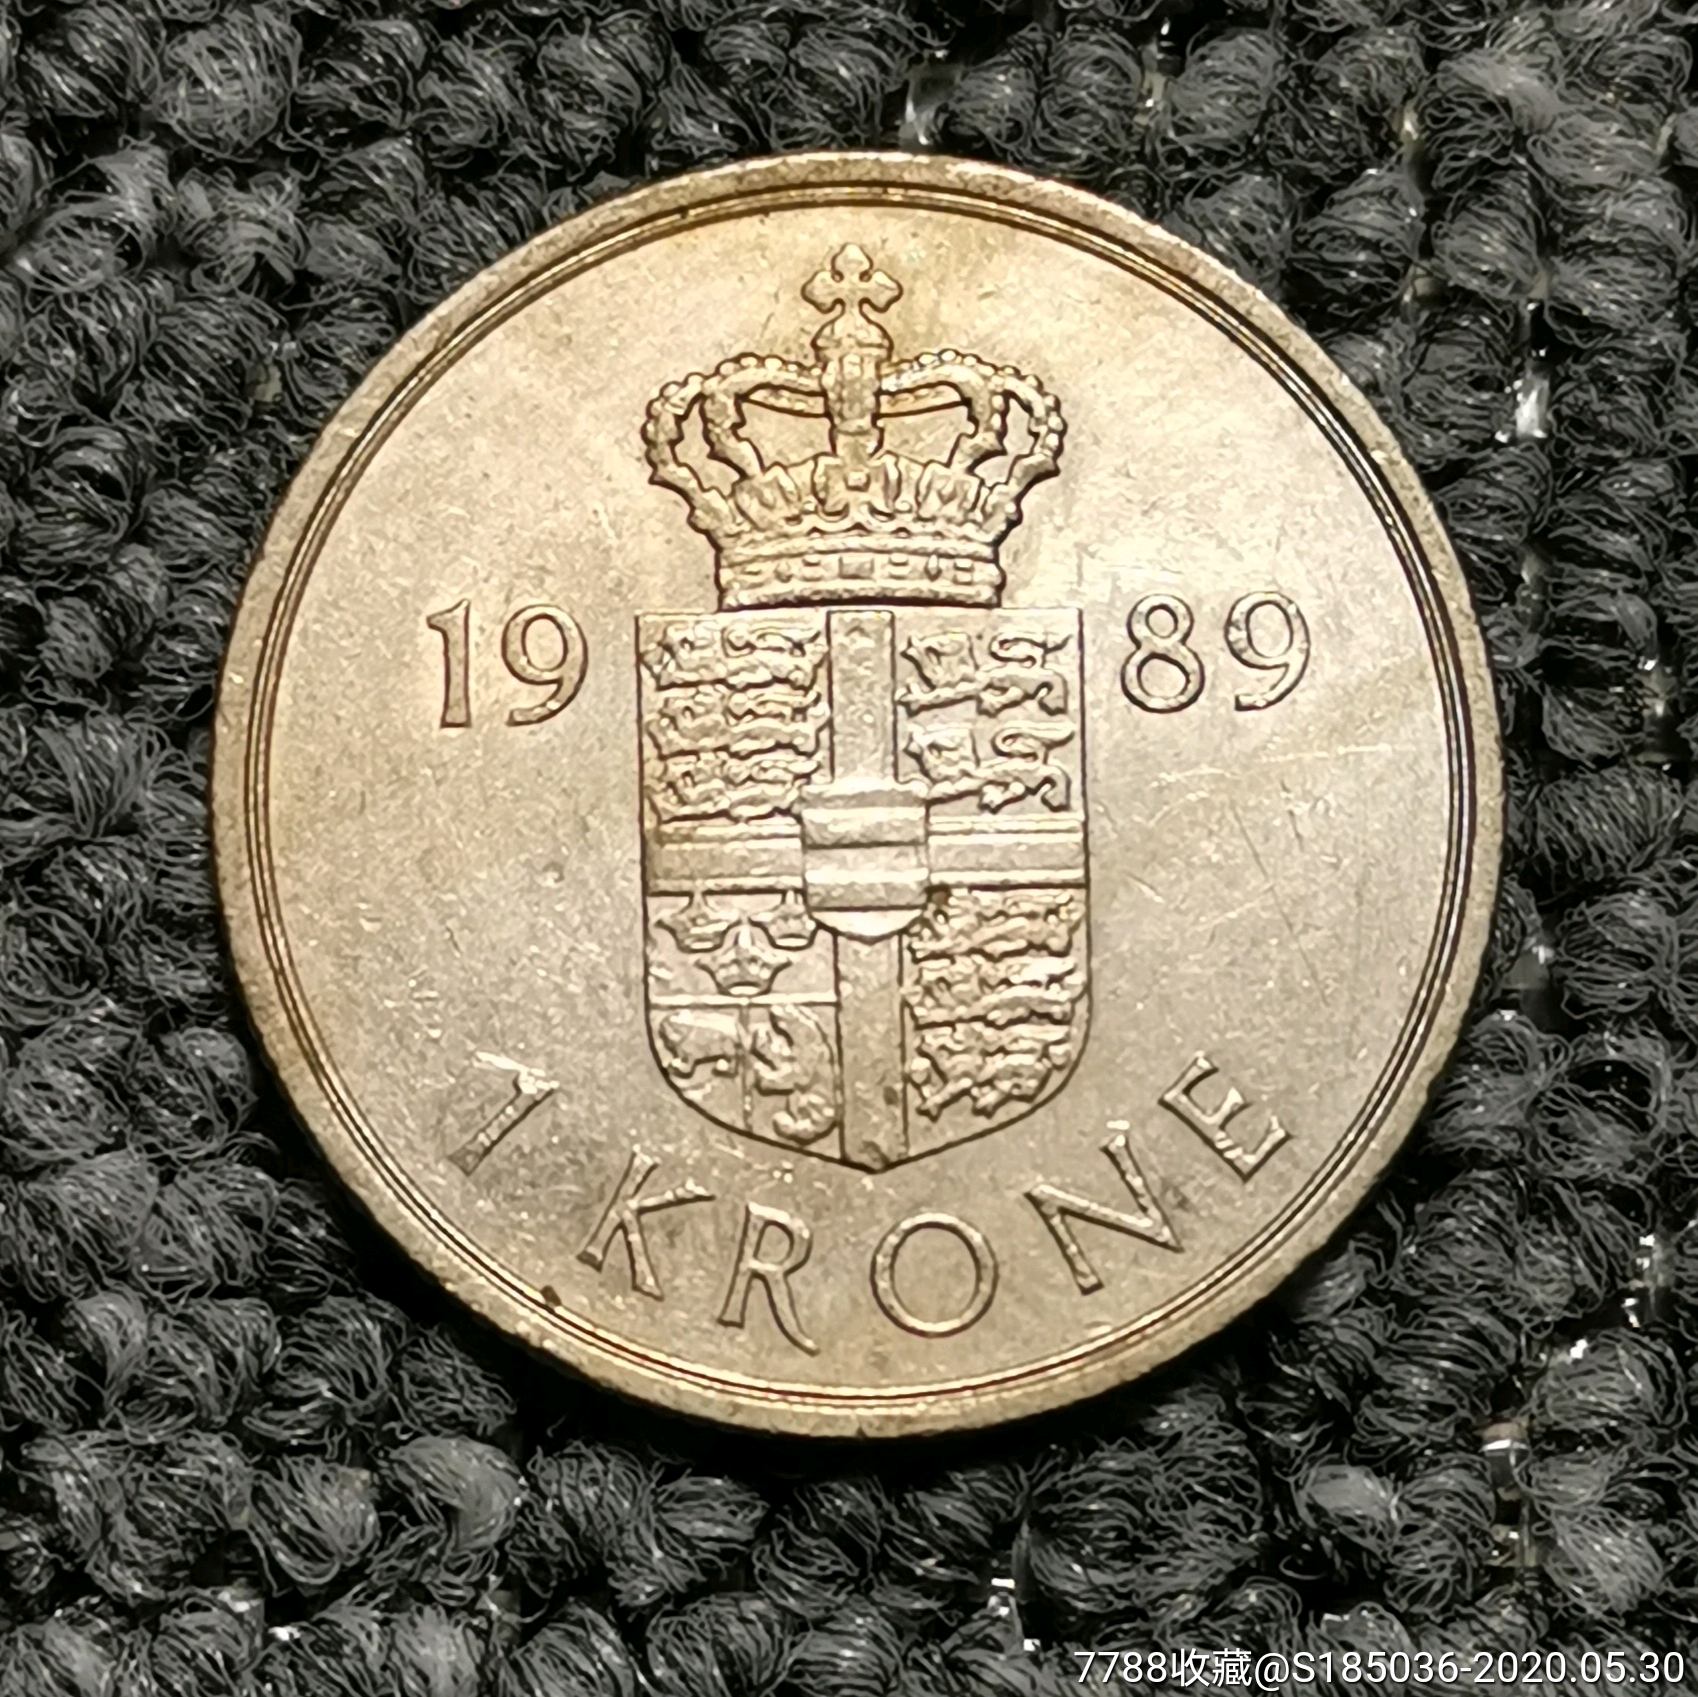 198*年丹麦1克朗硬币